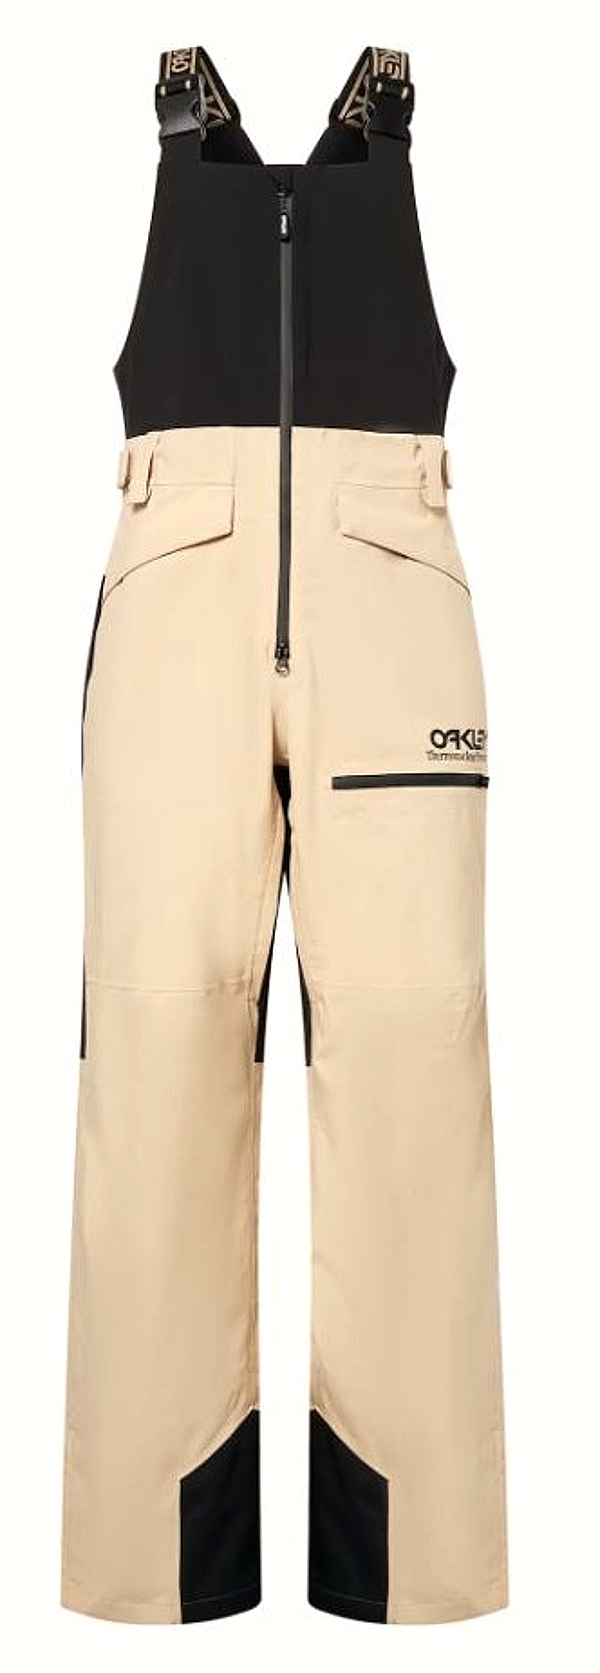 Oakley laclové kalhoty TNP Shell Bib Pants humus Velikost: XL + doručení do 24 hod.